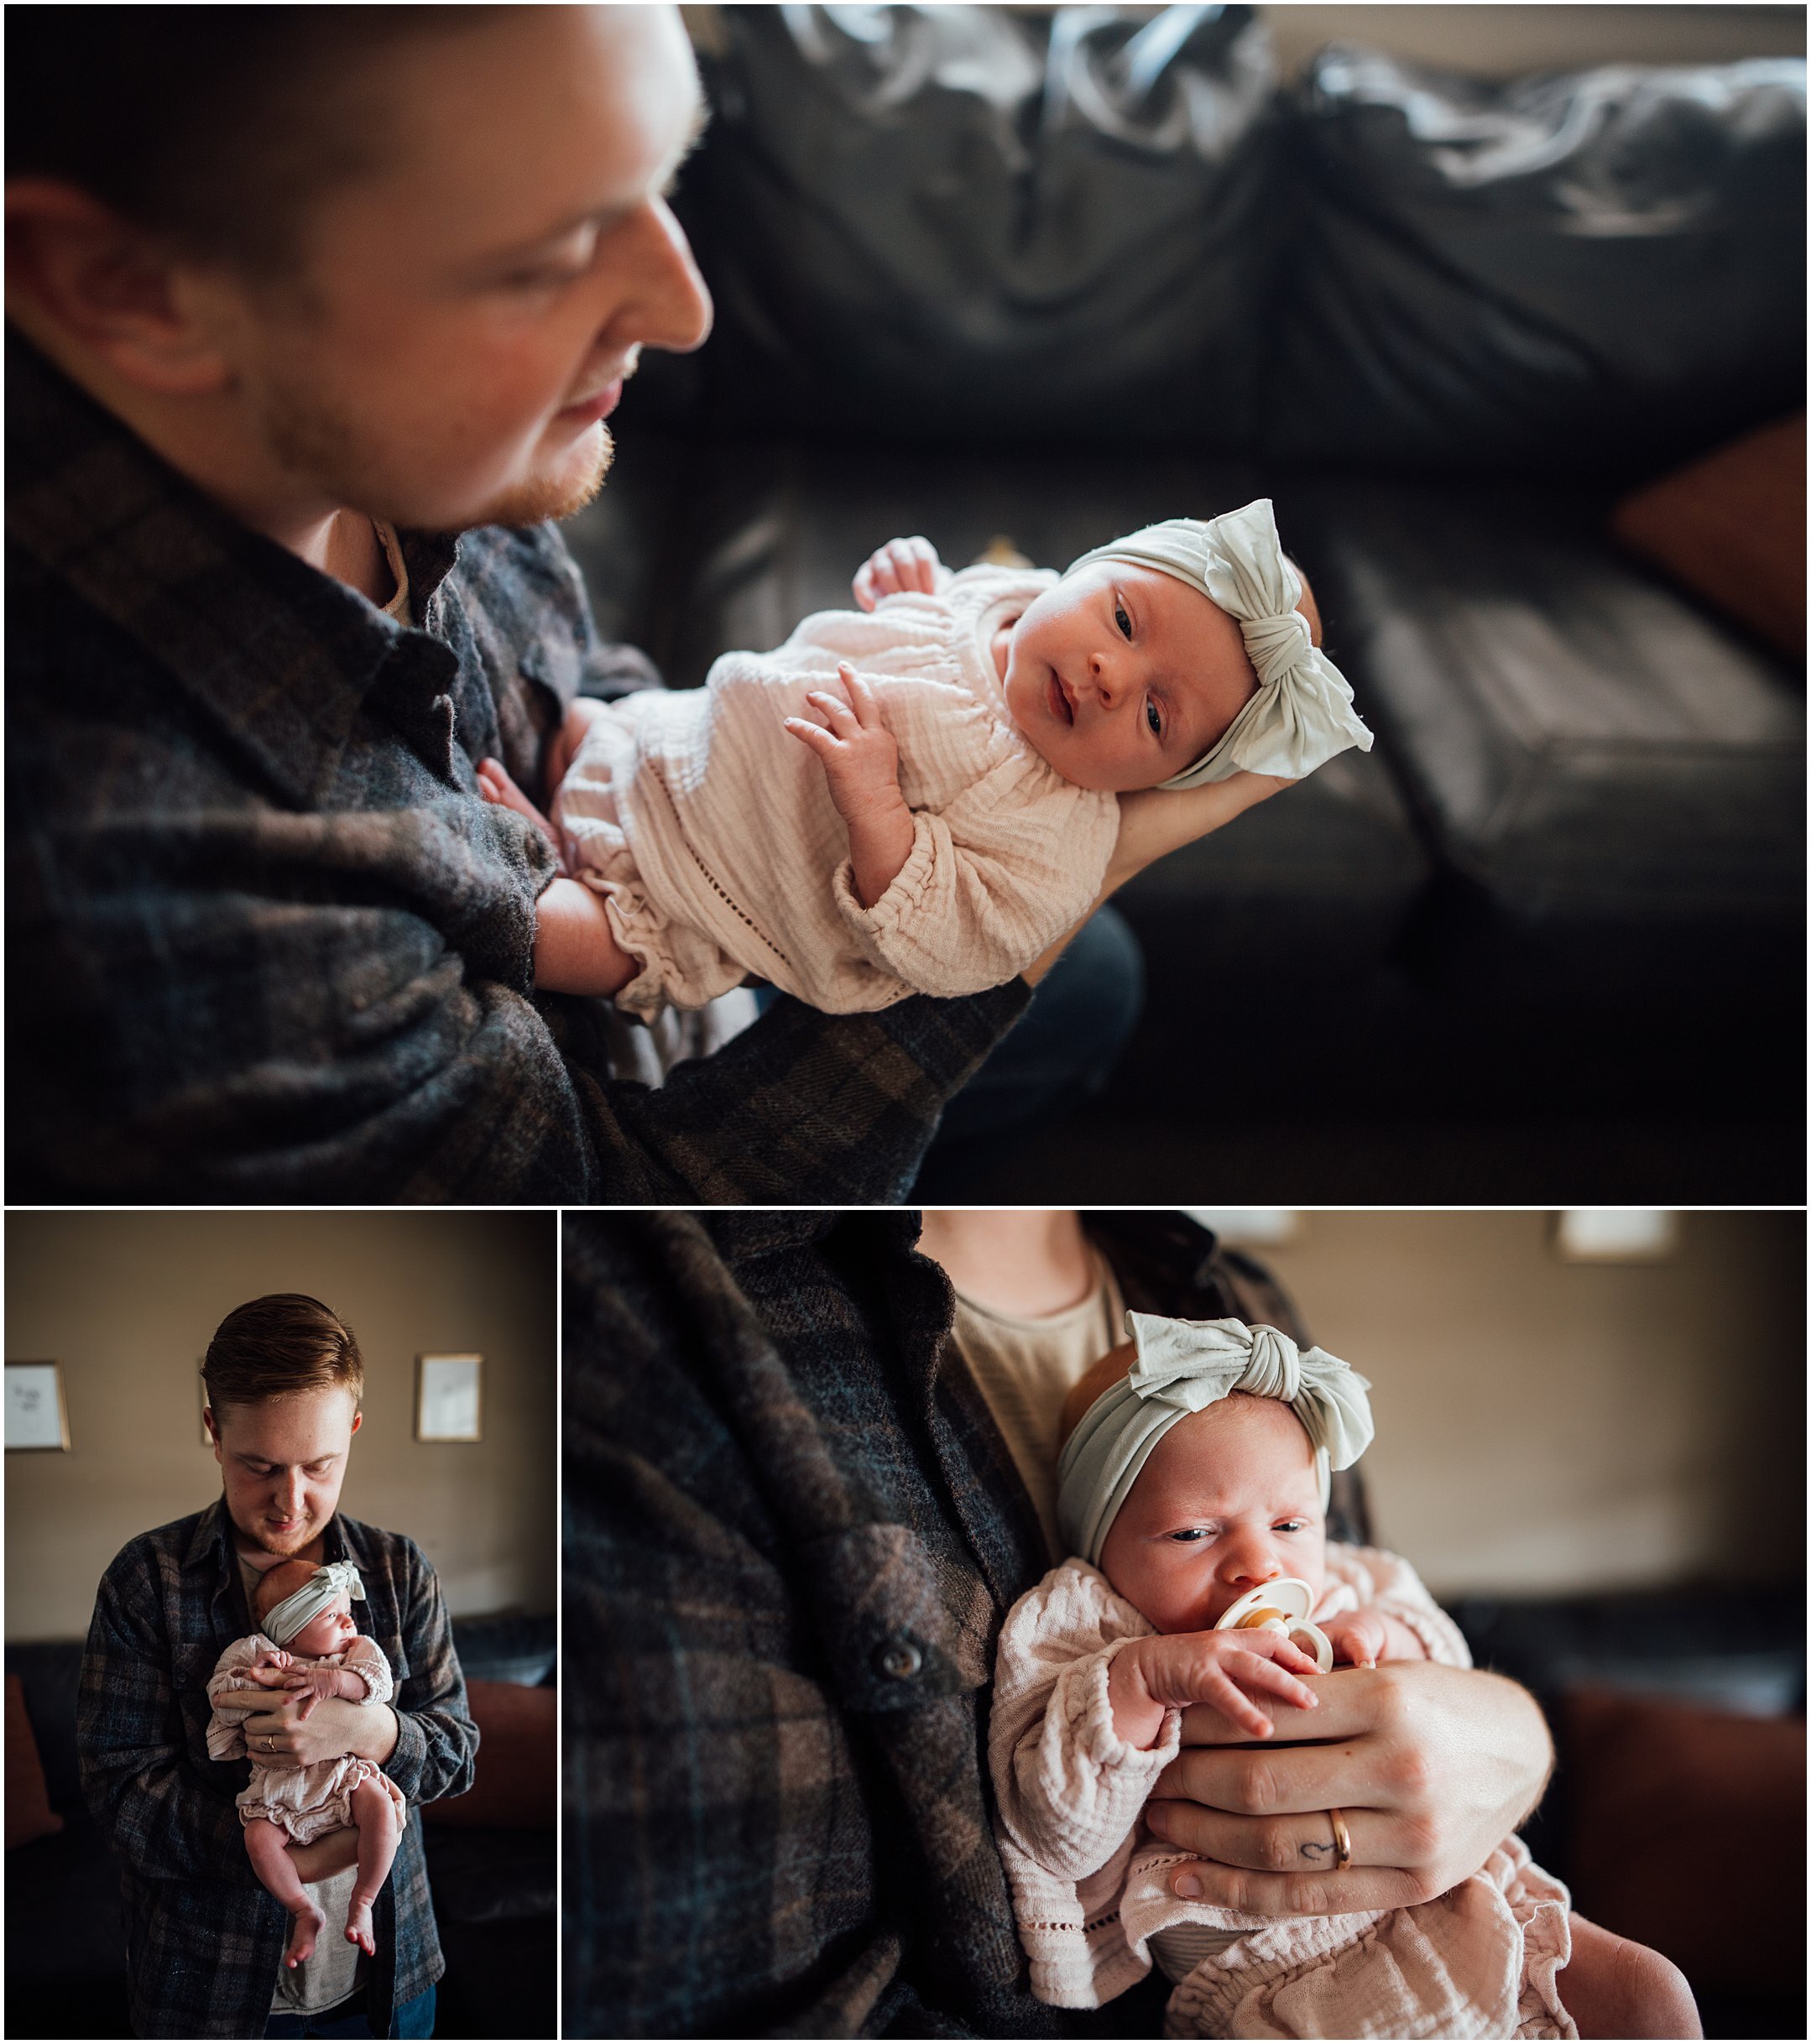 Kelly Lovan Photography | new albany, indiana newborn photography | indiana newborn photographer | newborn lifestyle photography | newborn lifestyle ideas | 